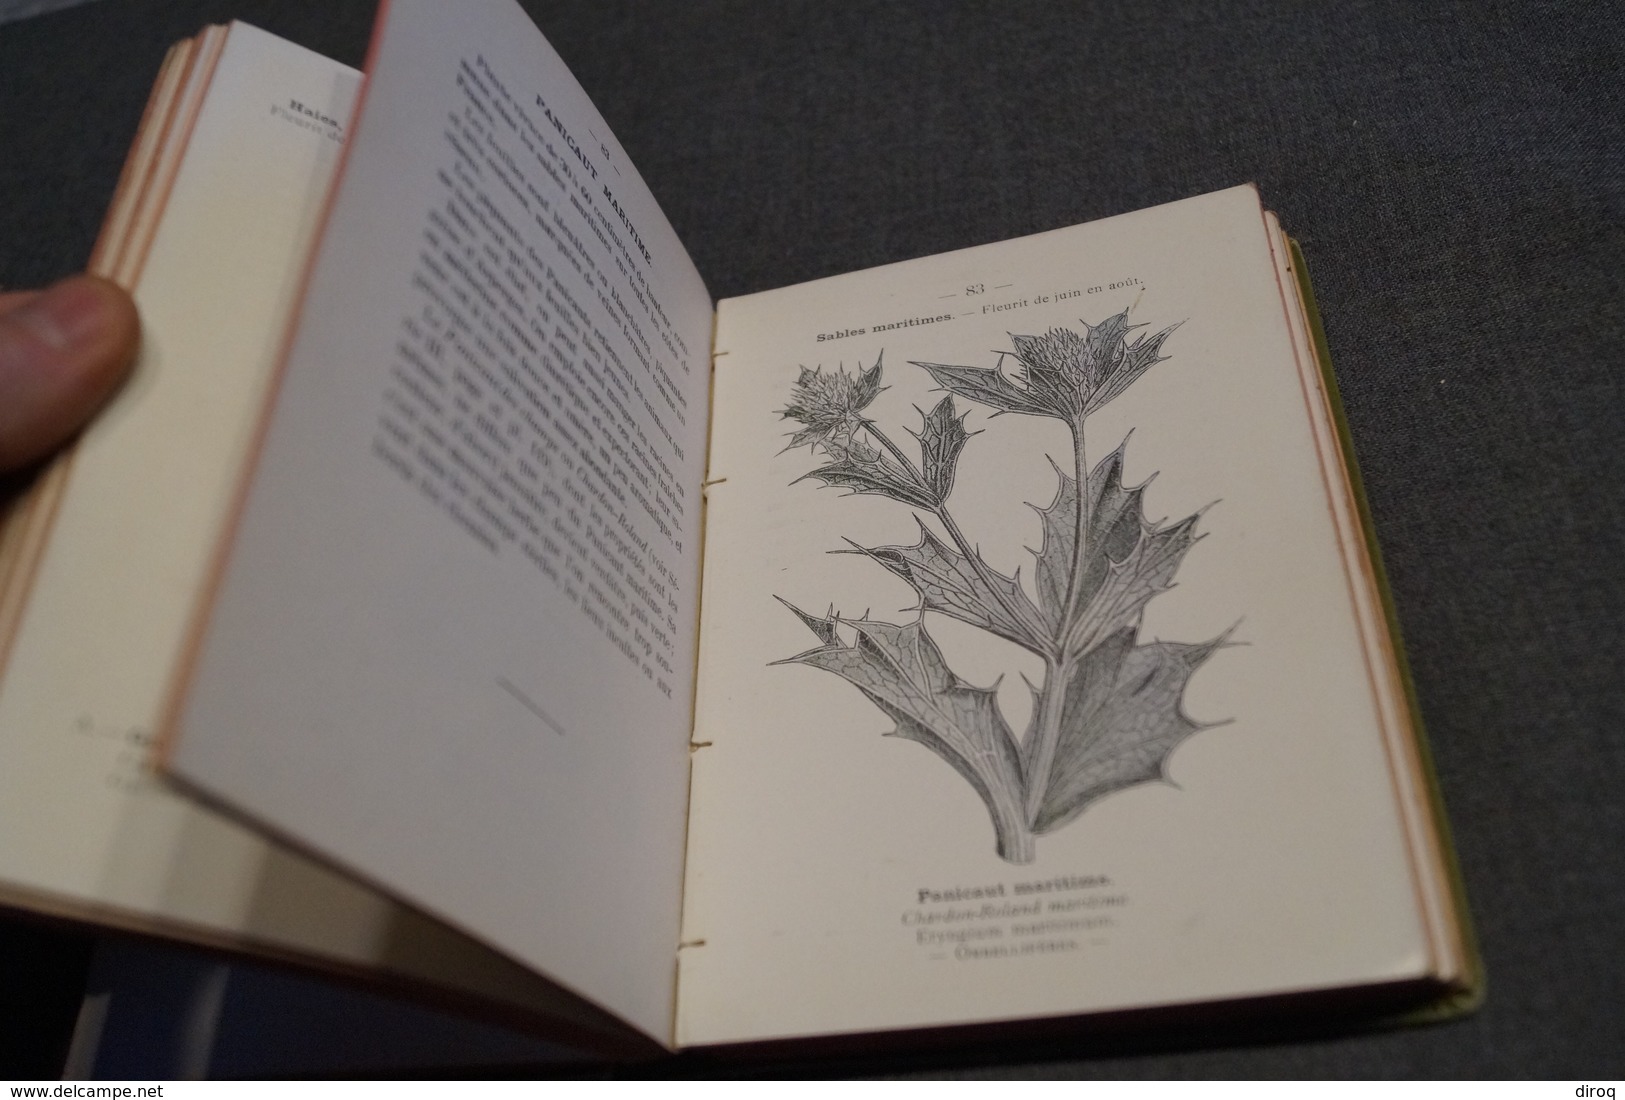 2 ouvrages Atlas de poche des plantes,R.Siélain,série II et III,1906-1907 + herbier d'époque,16 Cm. sur 11,5 Cm.